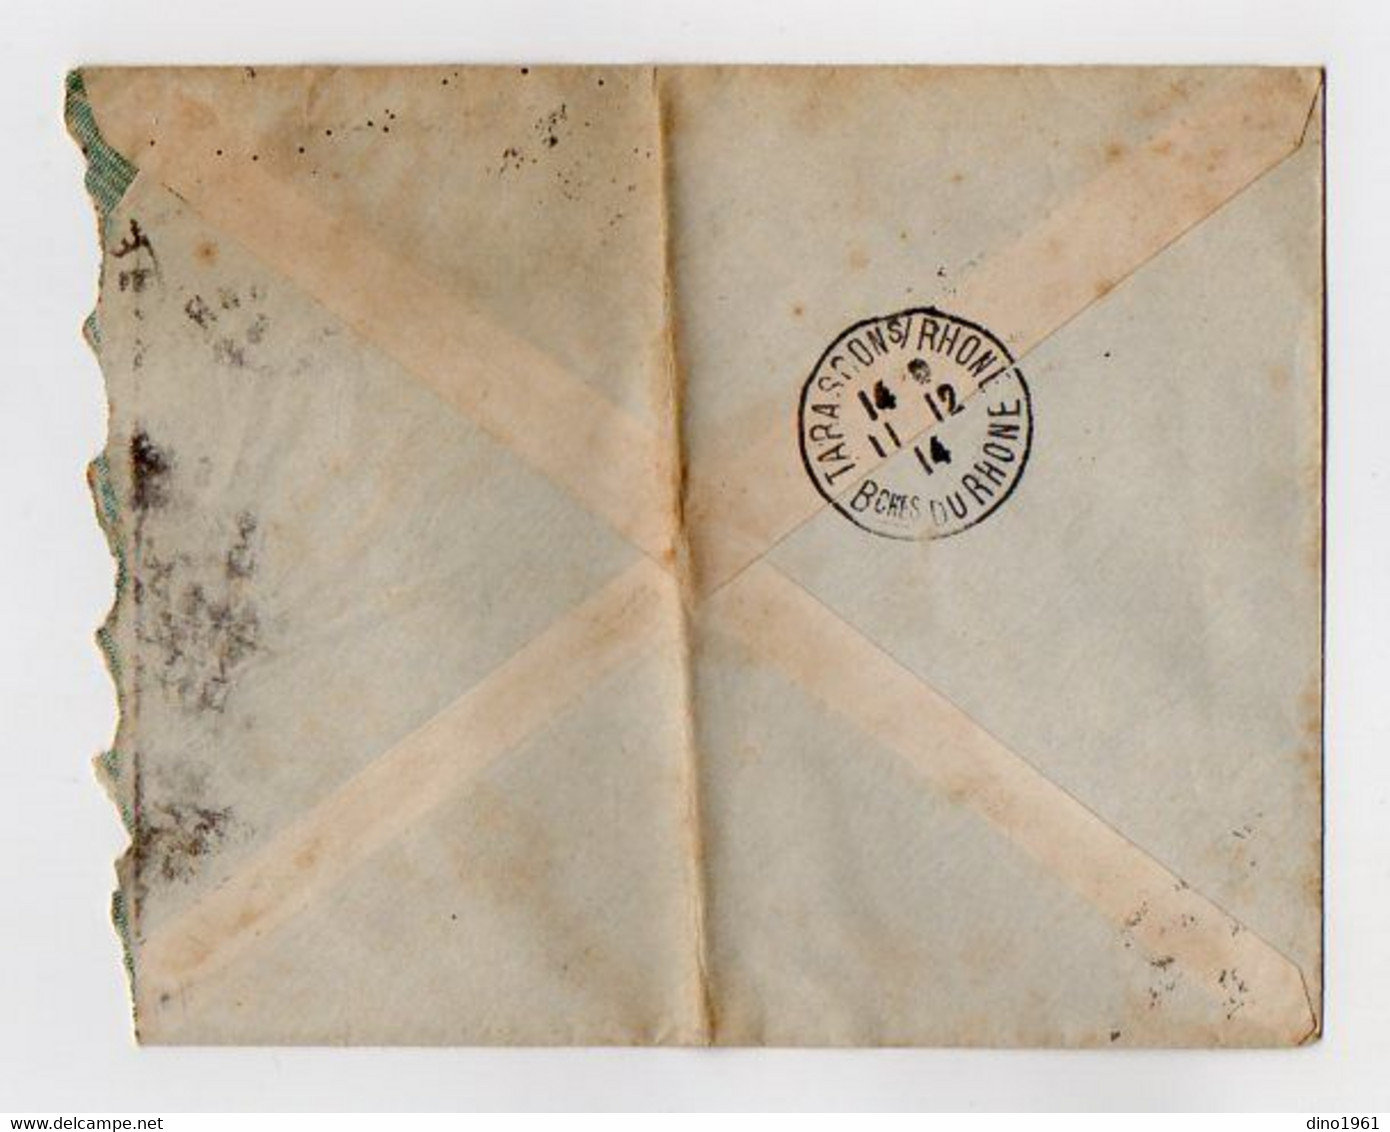 VP21.677 - 1914 - Enveloppe & Lettre - Tabacs,Cartes à Jouer GRIMAUD,Artifices... AUBAT - MARION à NIMES Pour TARASCON - Documenti